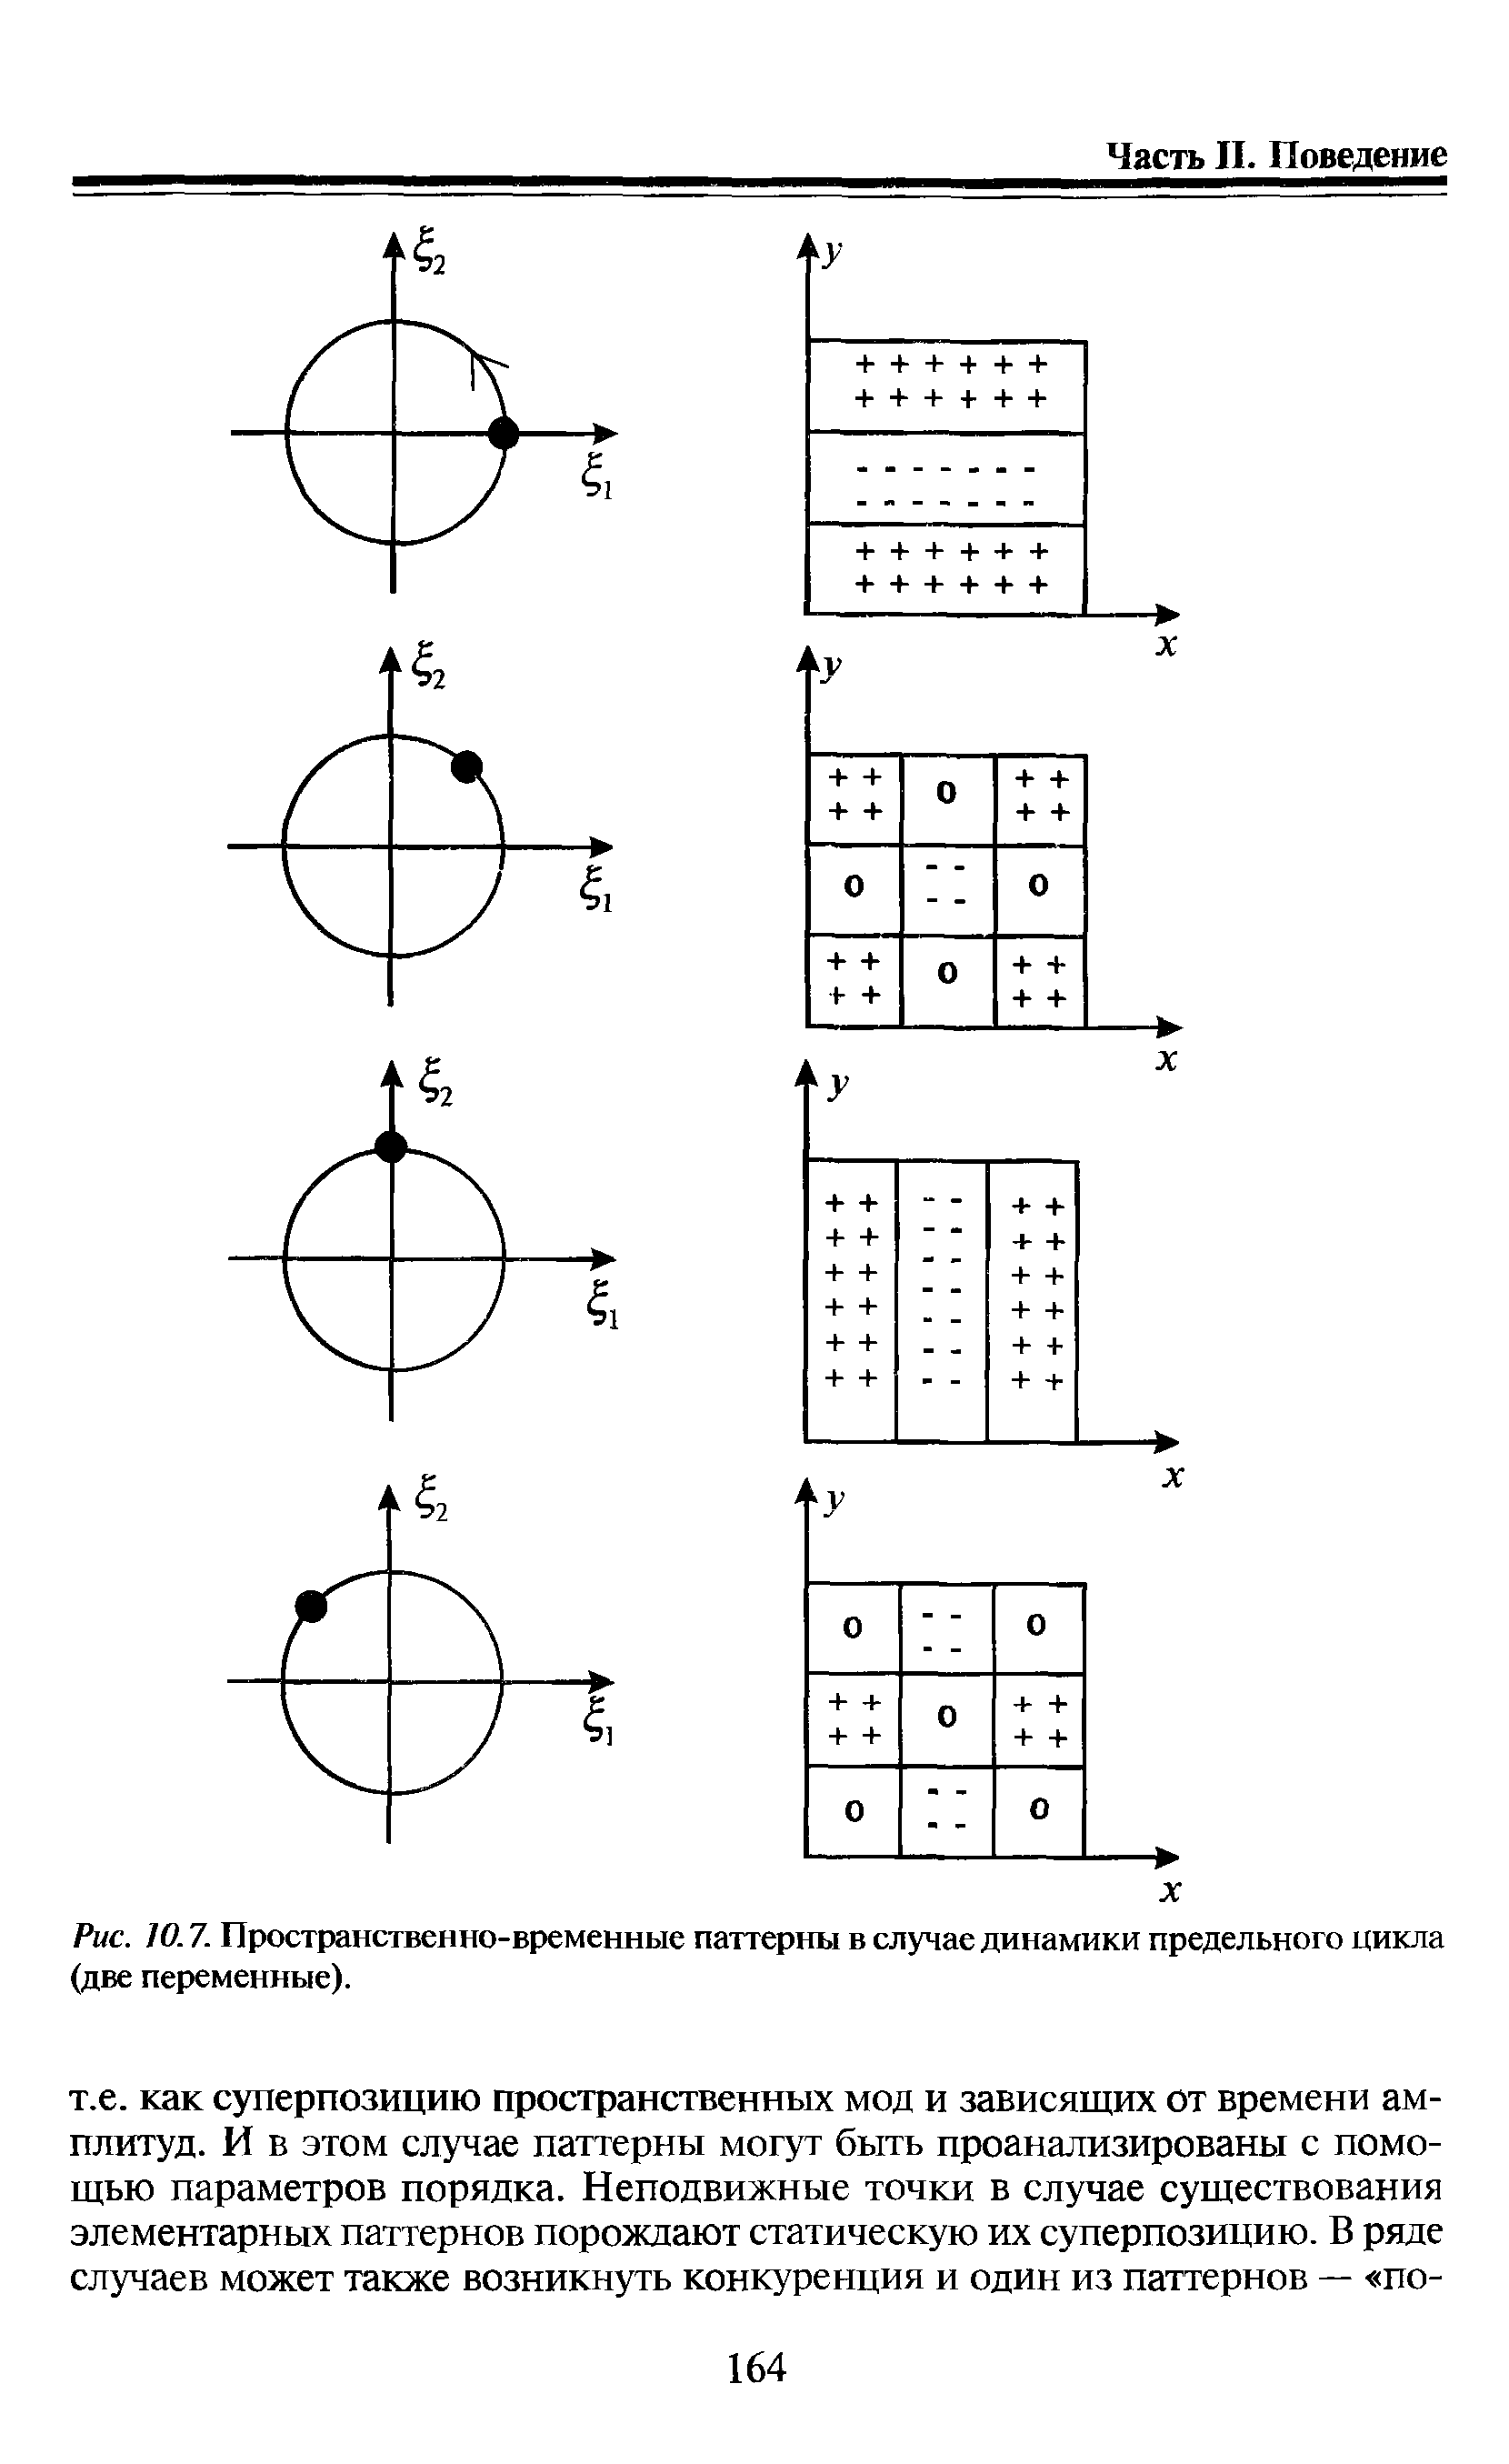 Рис. 10.7. Пространственно-временные паттерны в случае динамики предельного цикла (две переменные).